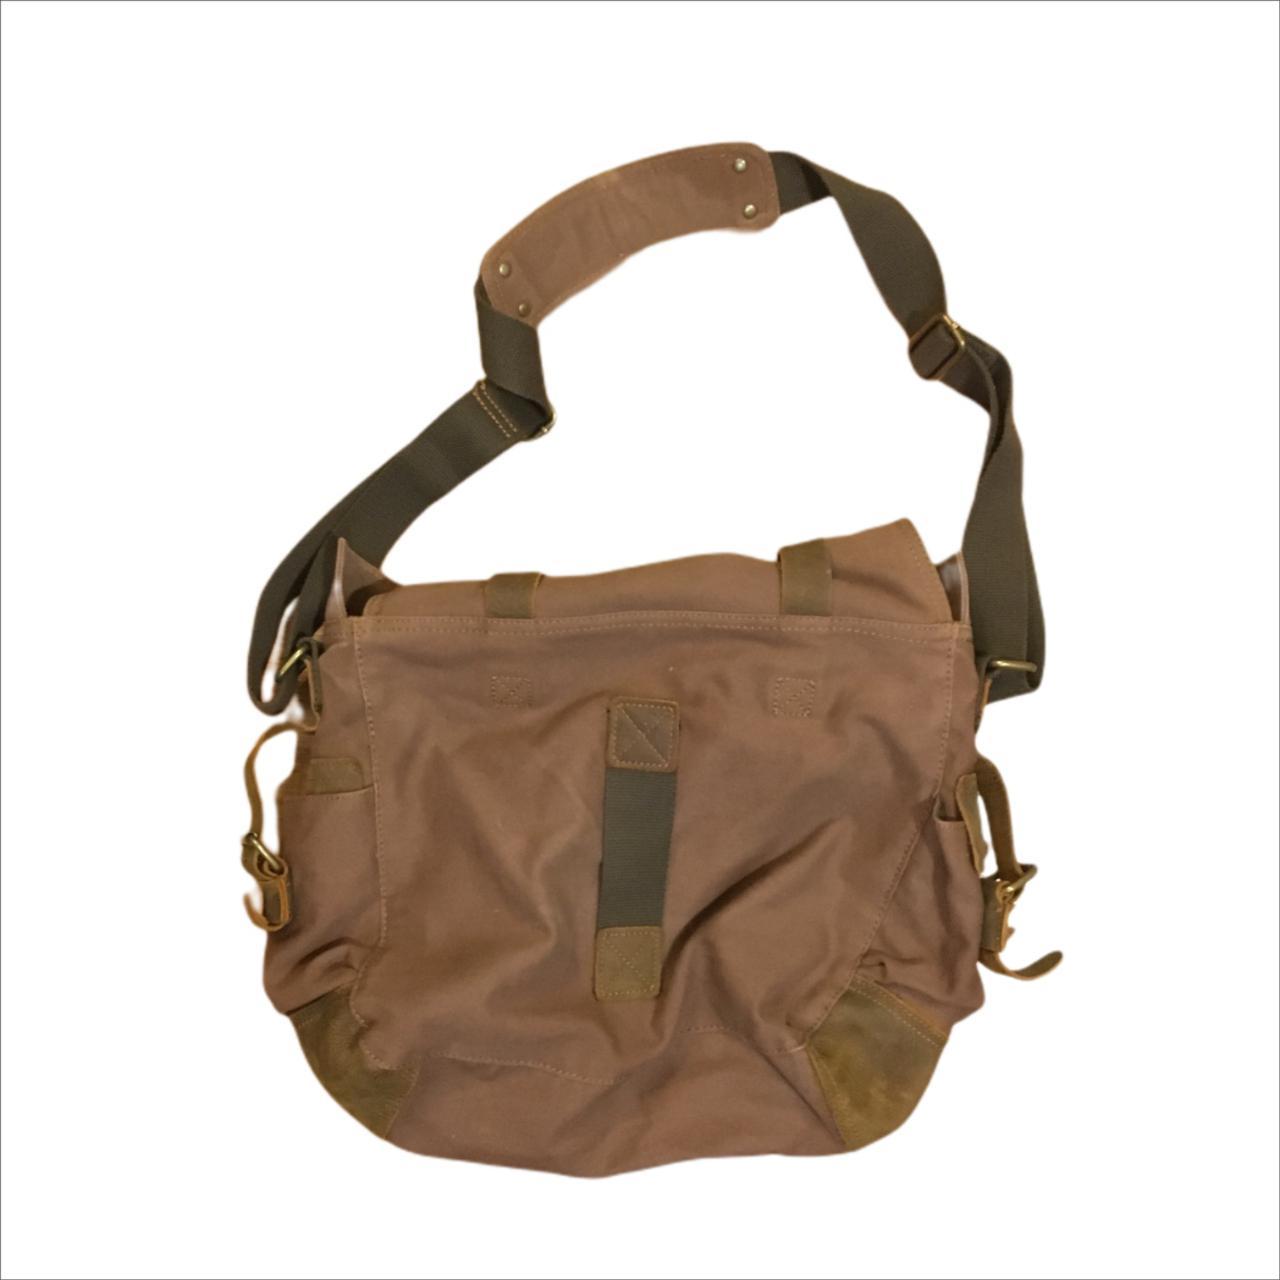 Product Image 4 - Vintage Messenger Bag

Color: Brown/Black

Defects: no